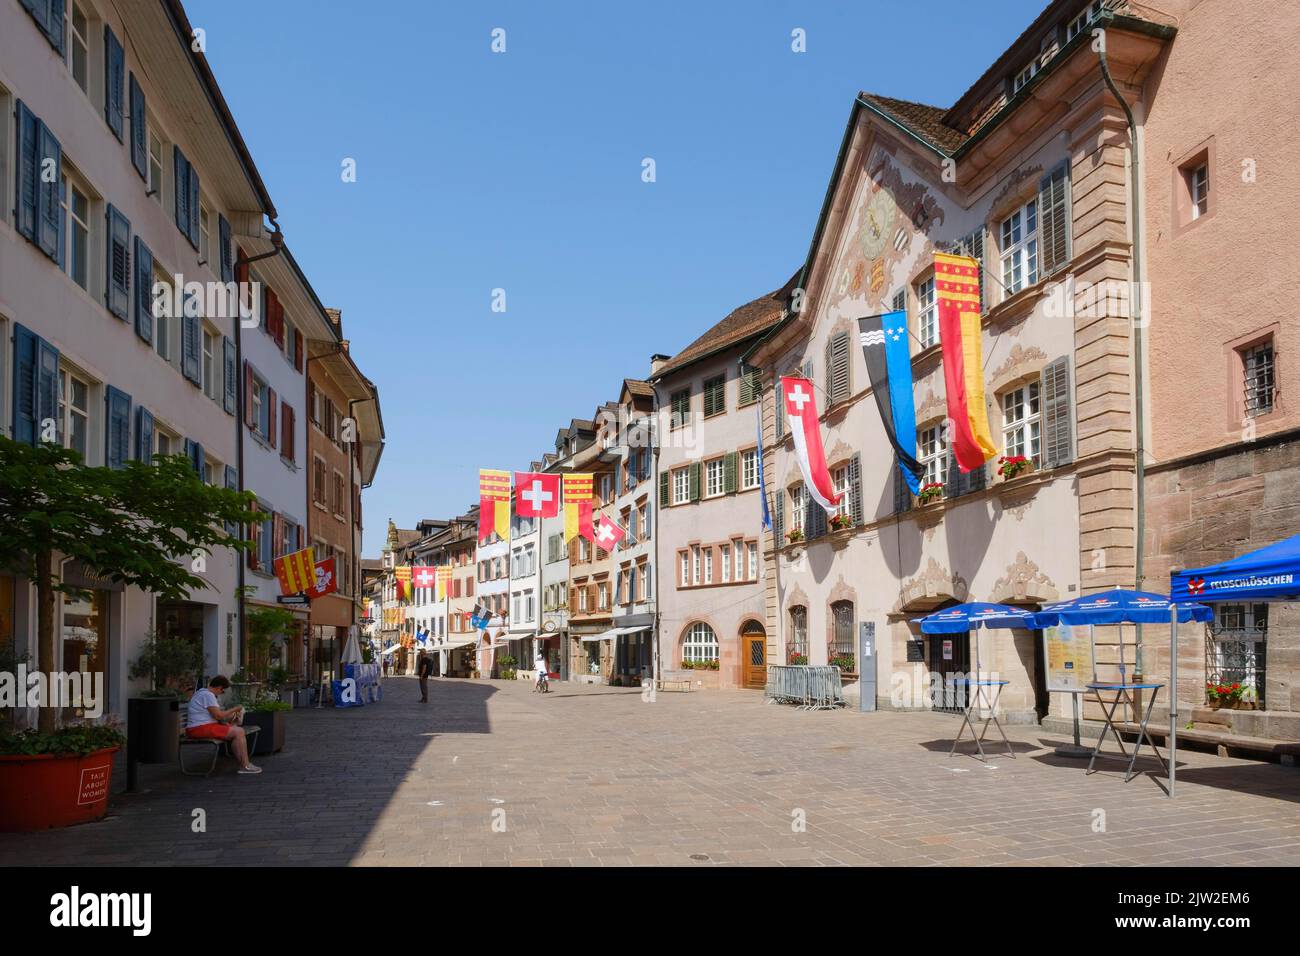 Town Hall in Marktgasse, pedestrian zone, Rheinfelden, Canton Aargau, Switzerland Stock Photo